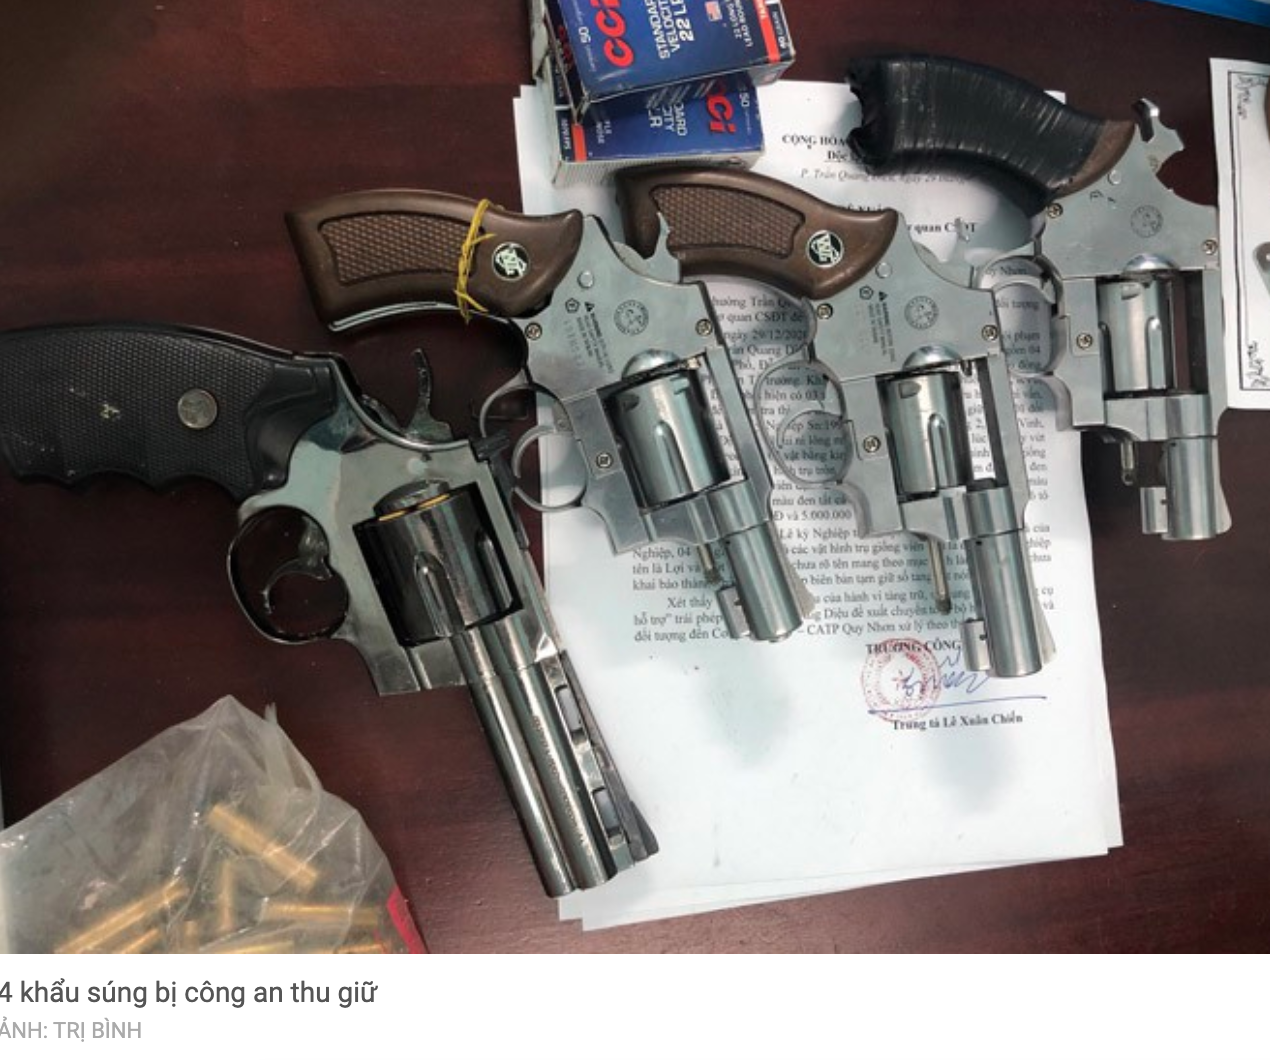 Nhóm thanh niên mang 4 khẩu súng, 164 viên đạn, đi giải quyết mâu thuẫn với “đối thủ”